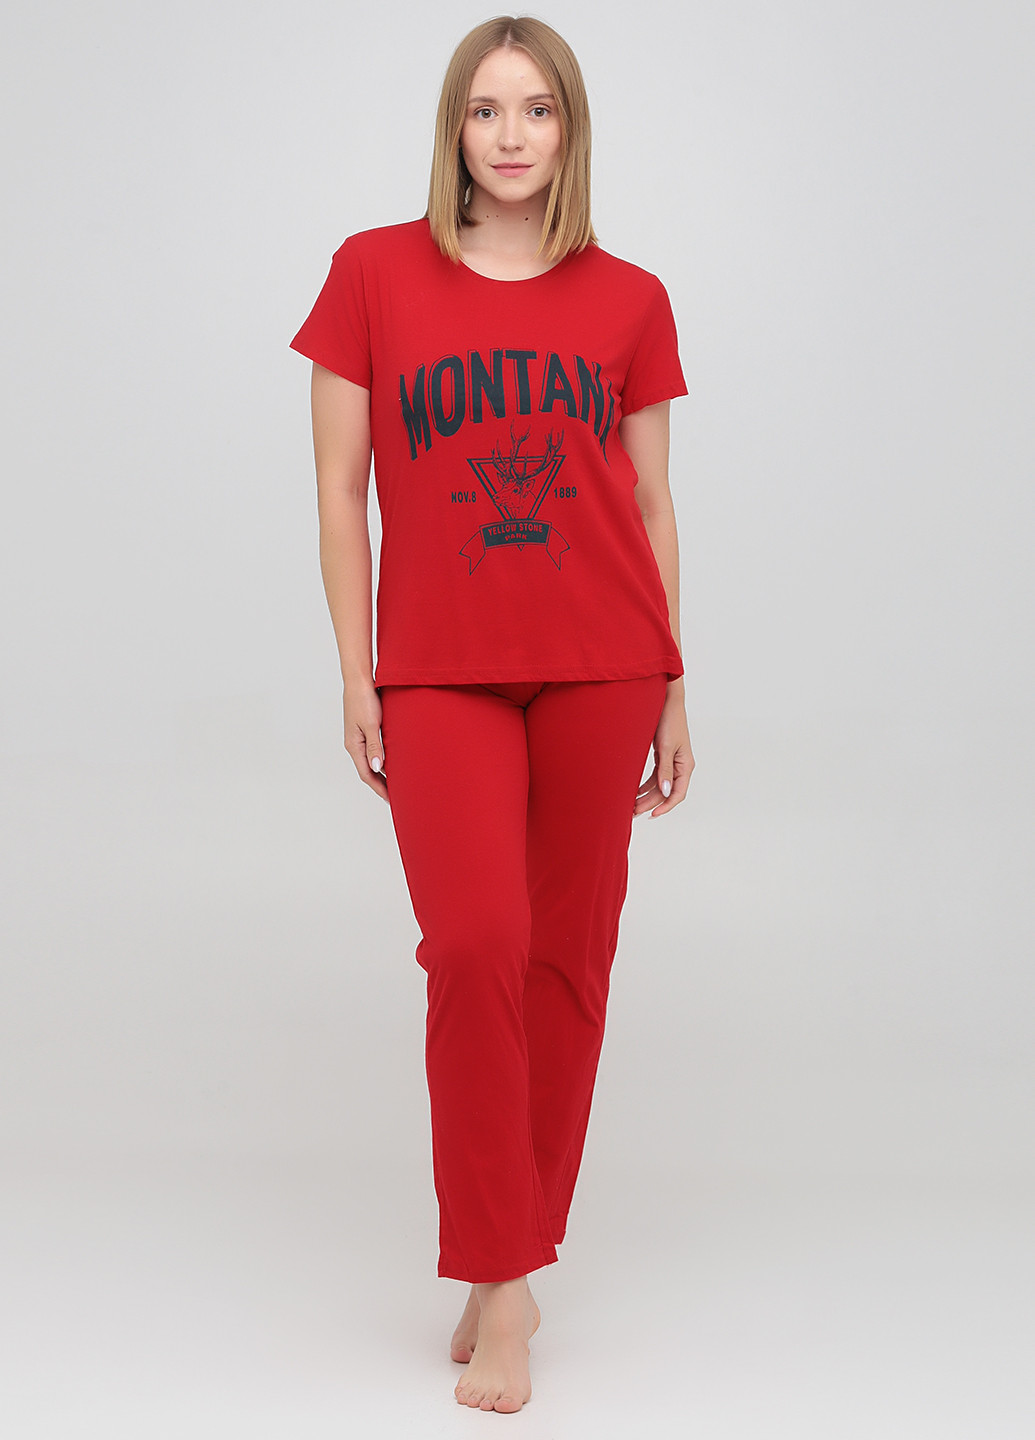 Красная всесезон пижама (футболка, брюки) футболка + брюки Carla Mara